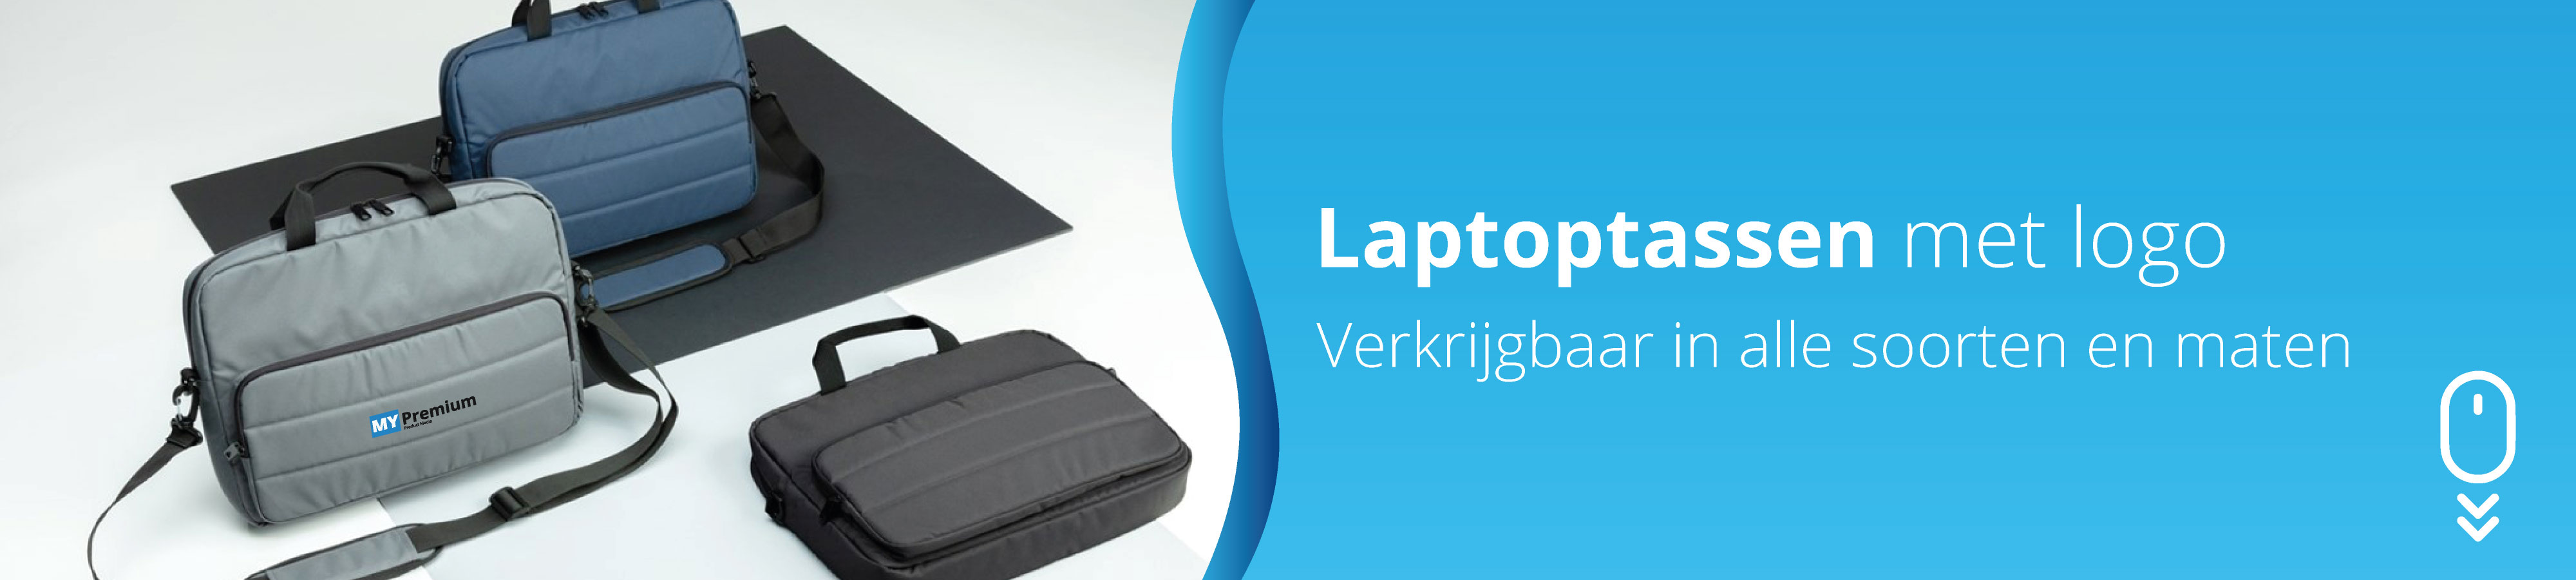 laptophoezen-bedrukken-laptophoezen-met-logo